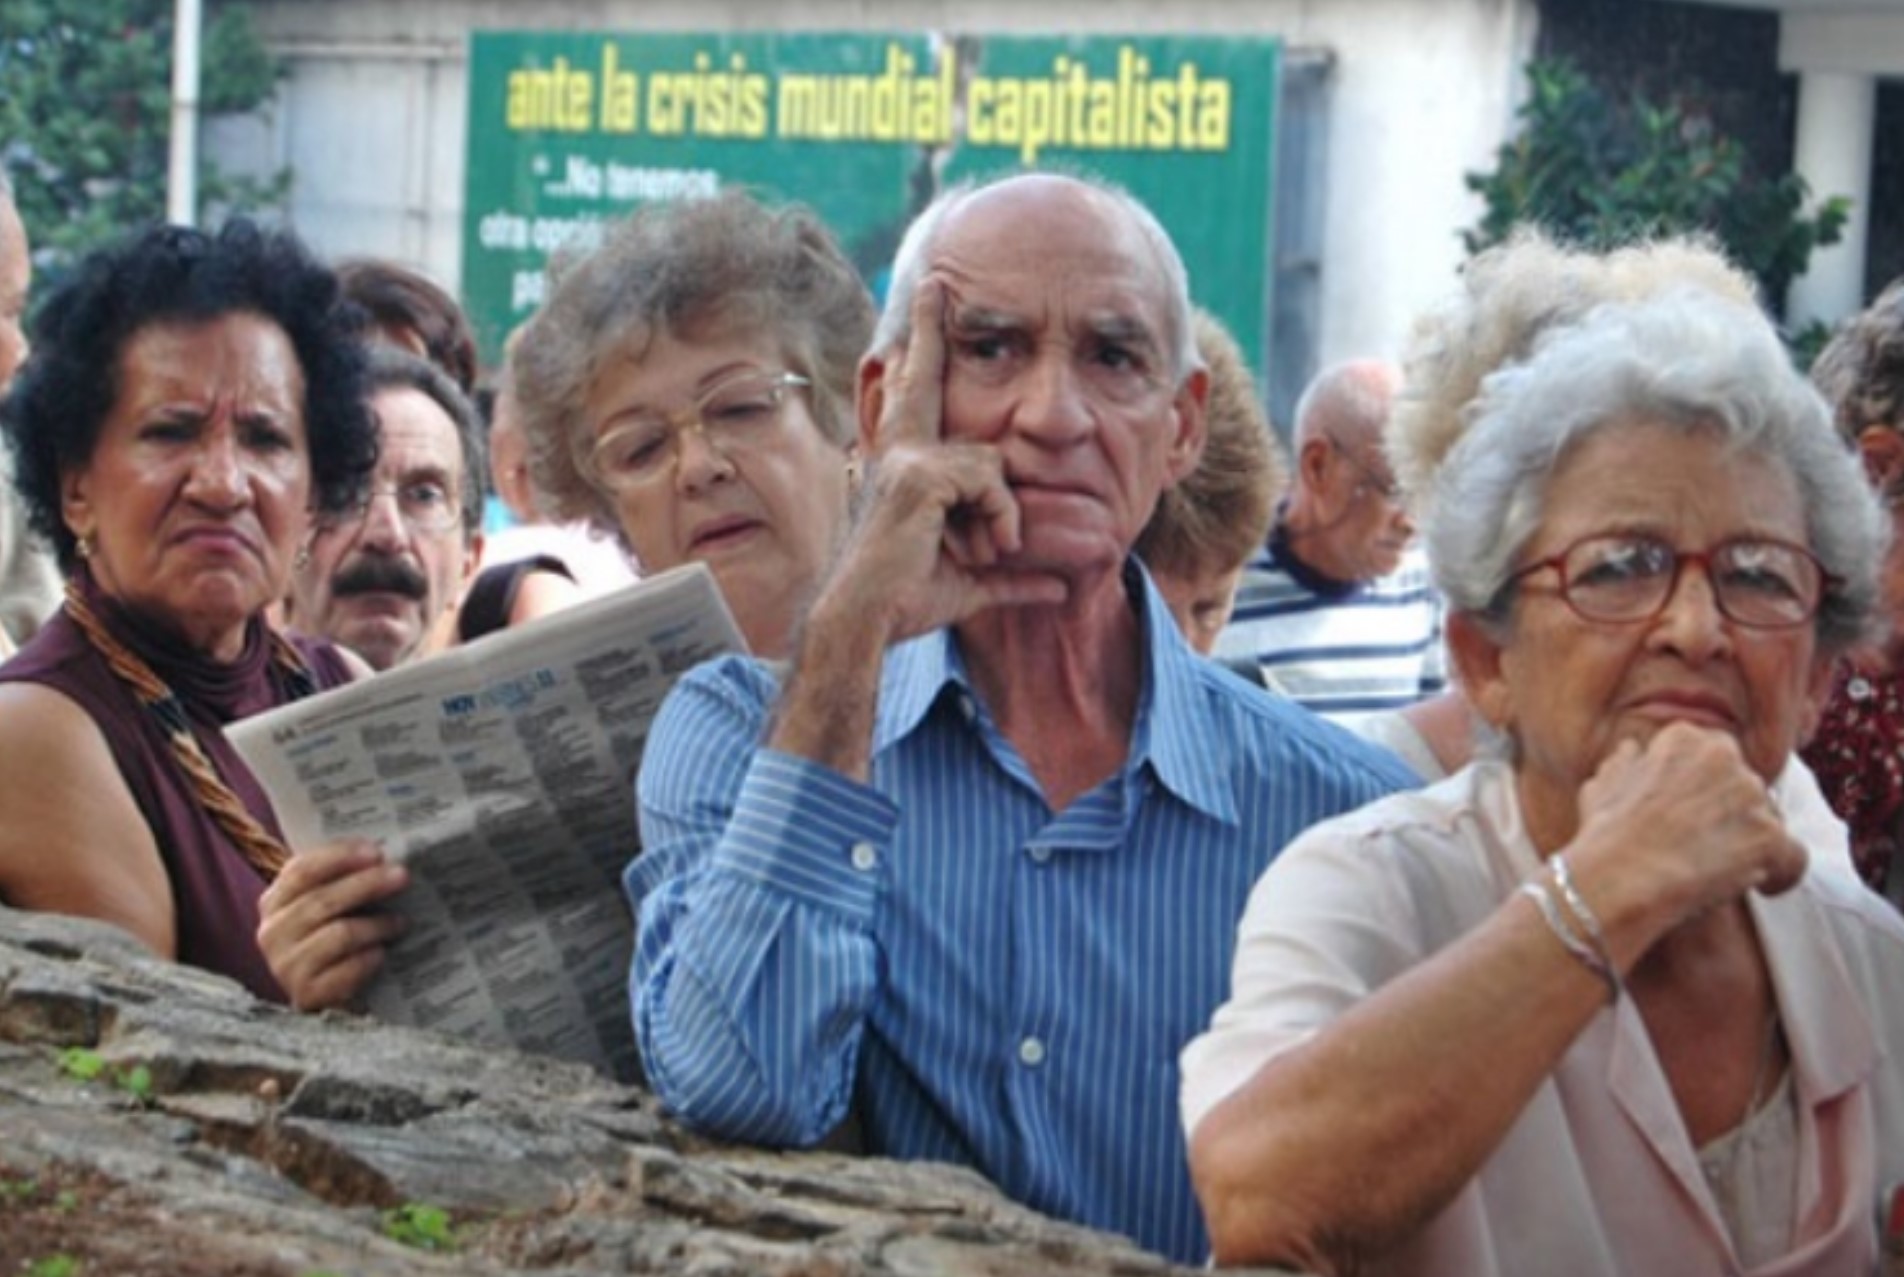 Cuidando la Casa Cuba: Perspectiva democrática de los cuidados y la protección social